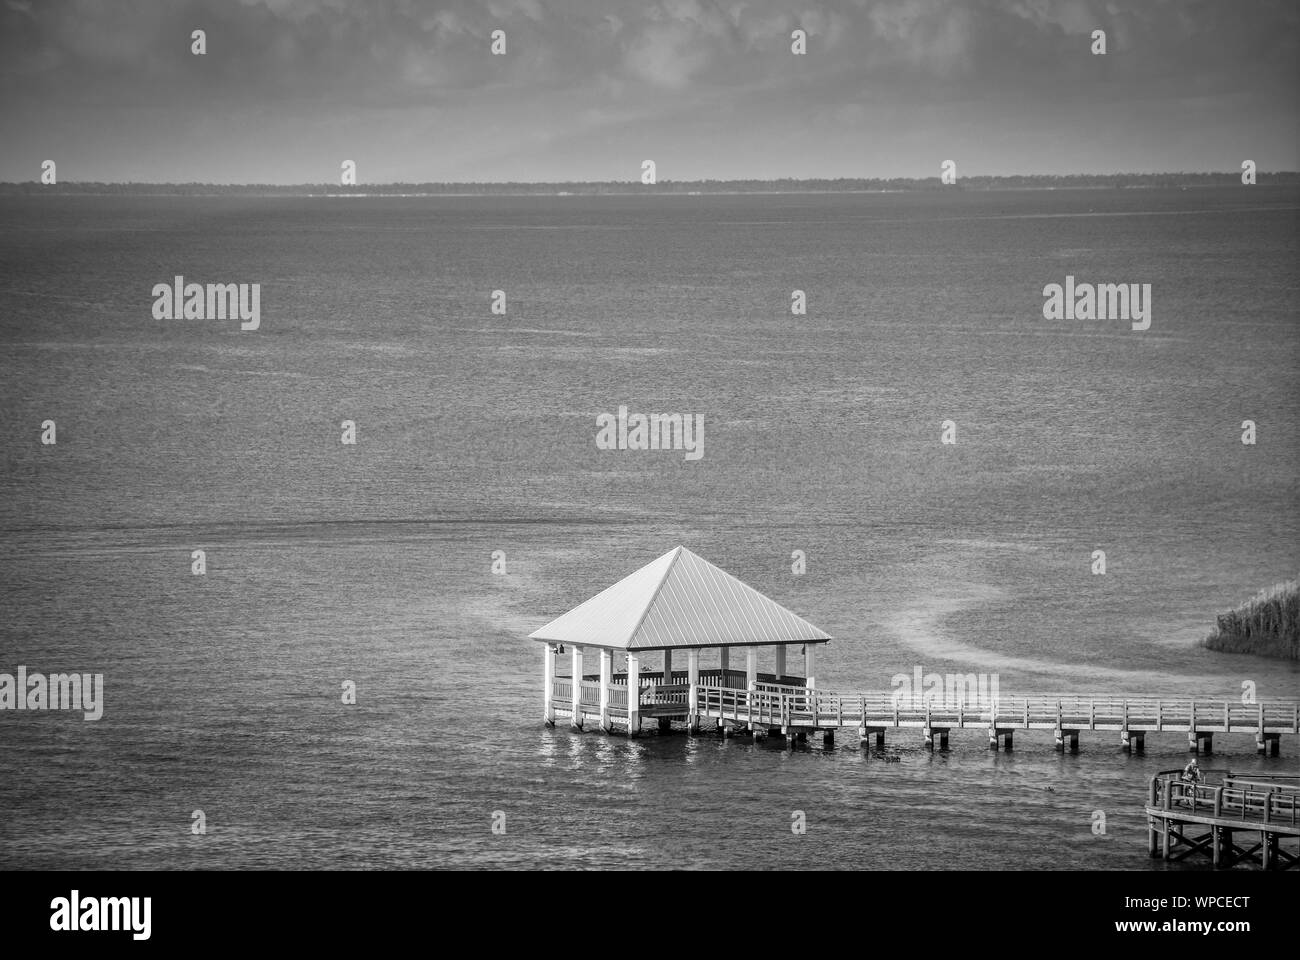 Ambiance éthérée de plate-forme avec toit propanel assis sur pilotis, entouré par l'eau avec une longue passerelle en bois sur la baie d'Apalachicola, en FL Banque D'Images